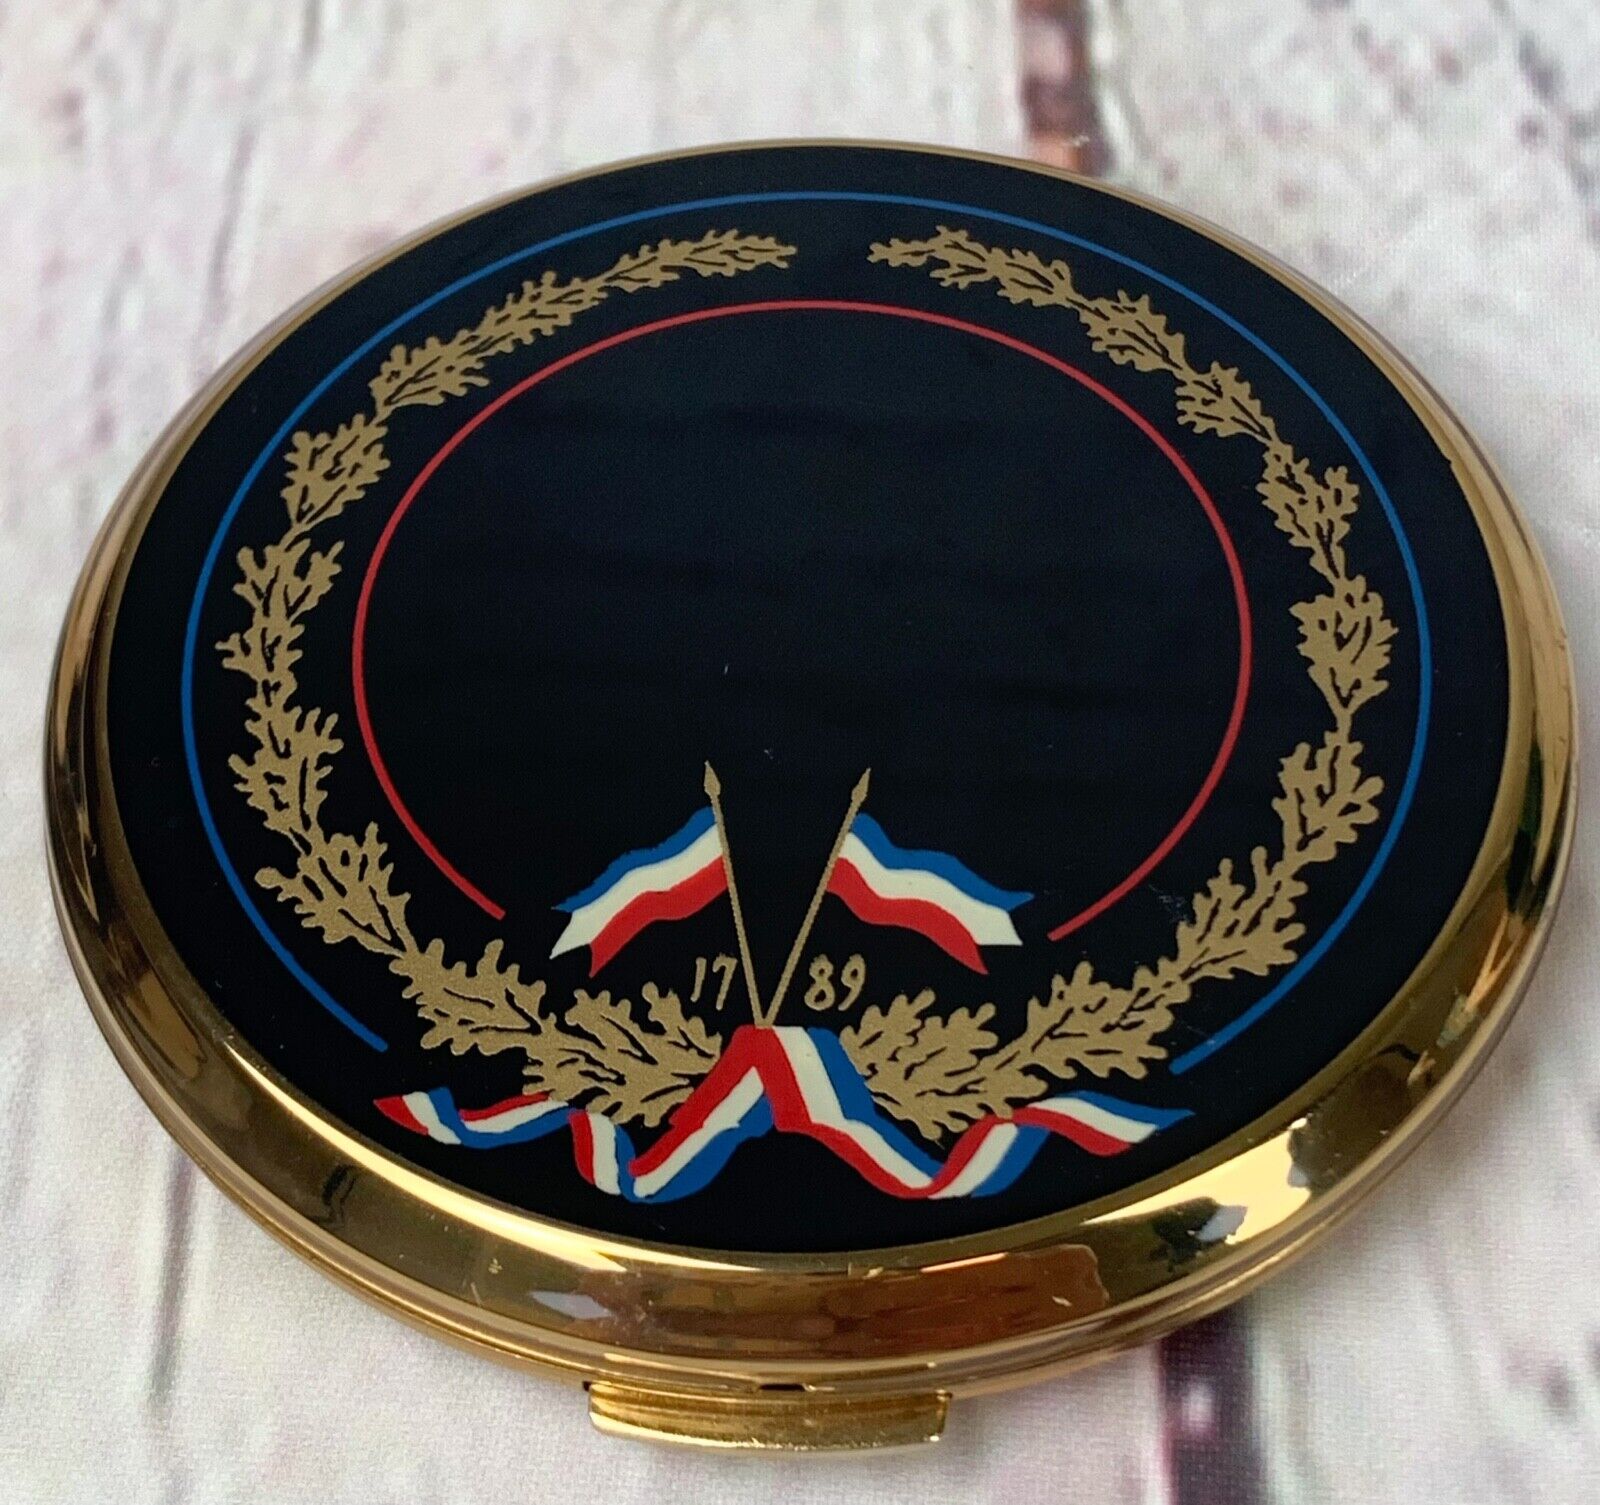 LANCOME French Revolution Commemorative Maquifinish Powder Compact Mirror Case